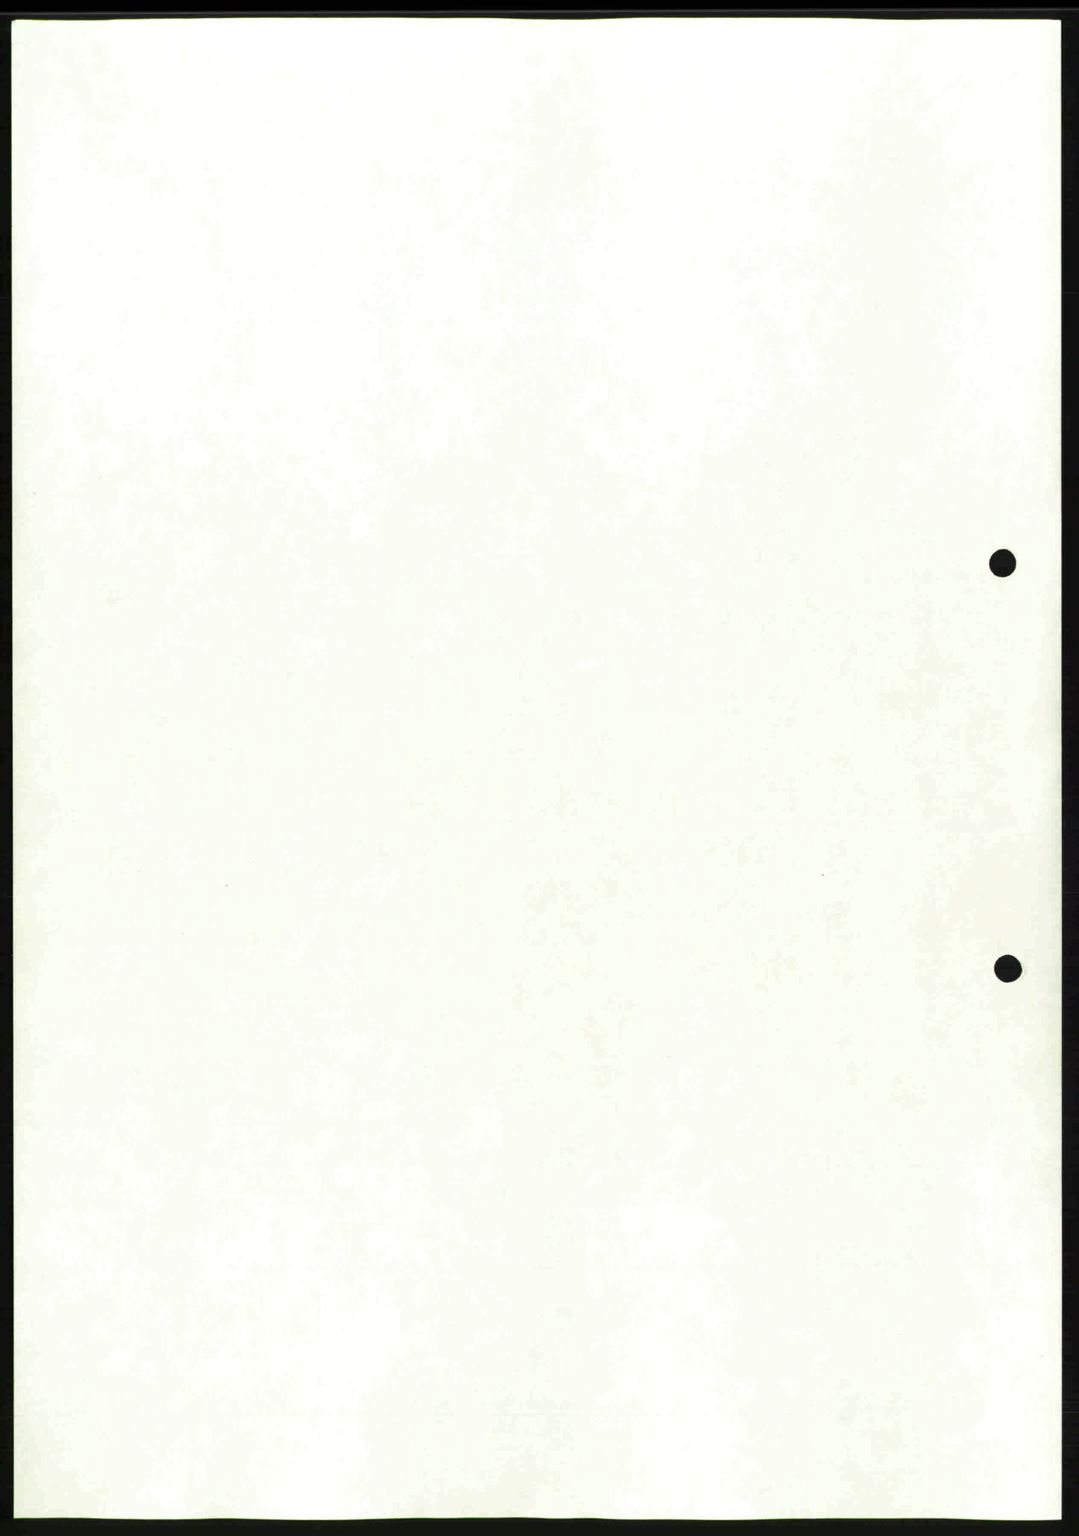 Moss sorenskriveri, SAO/A-10168: Mortgage book no. A9, 1941-1942